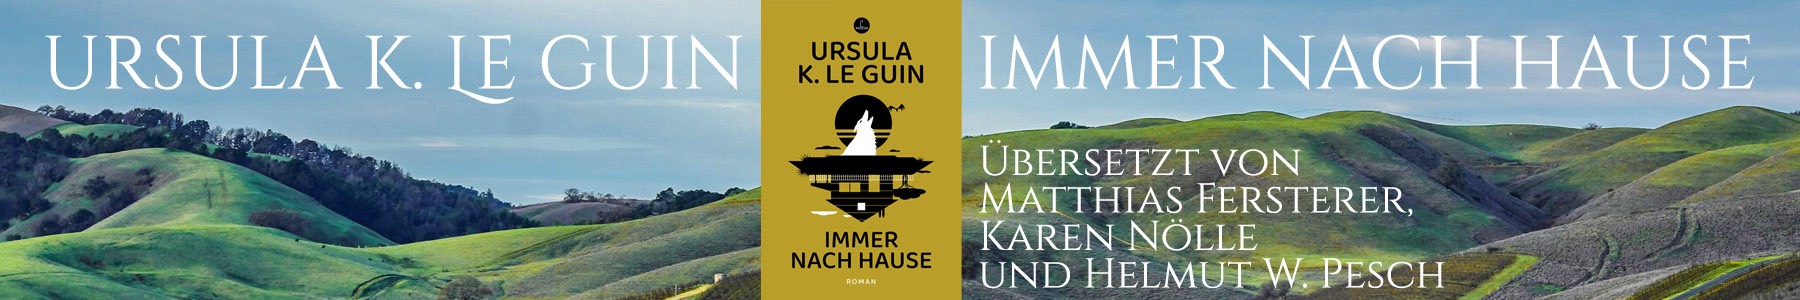 Ein großer utopischer Entwurf von Ursula K. Le Guin